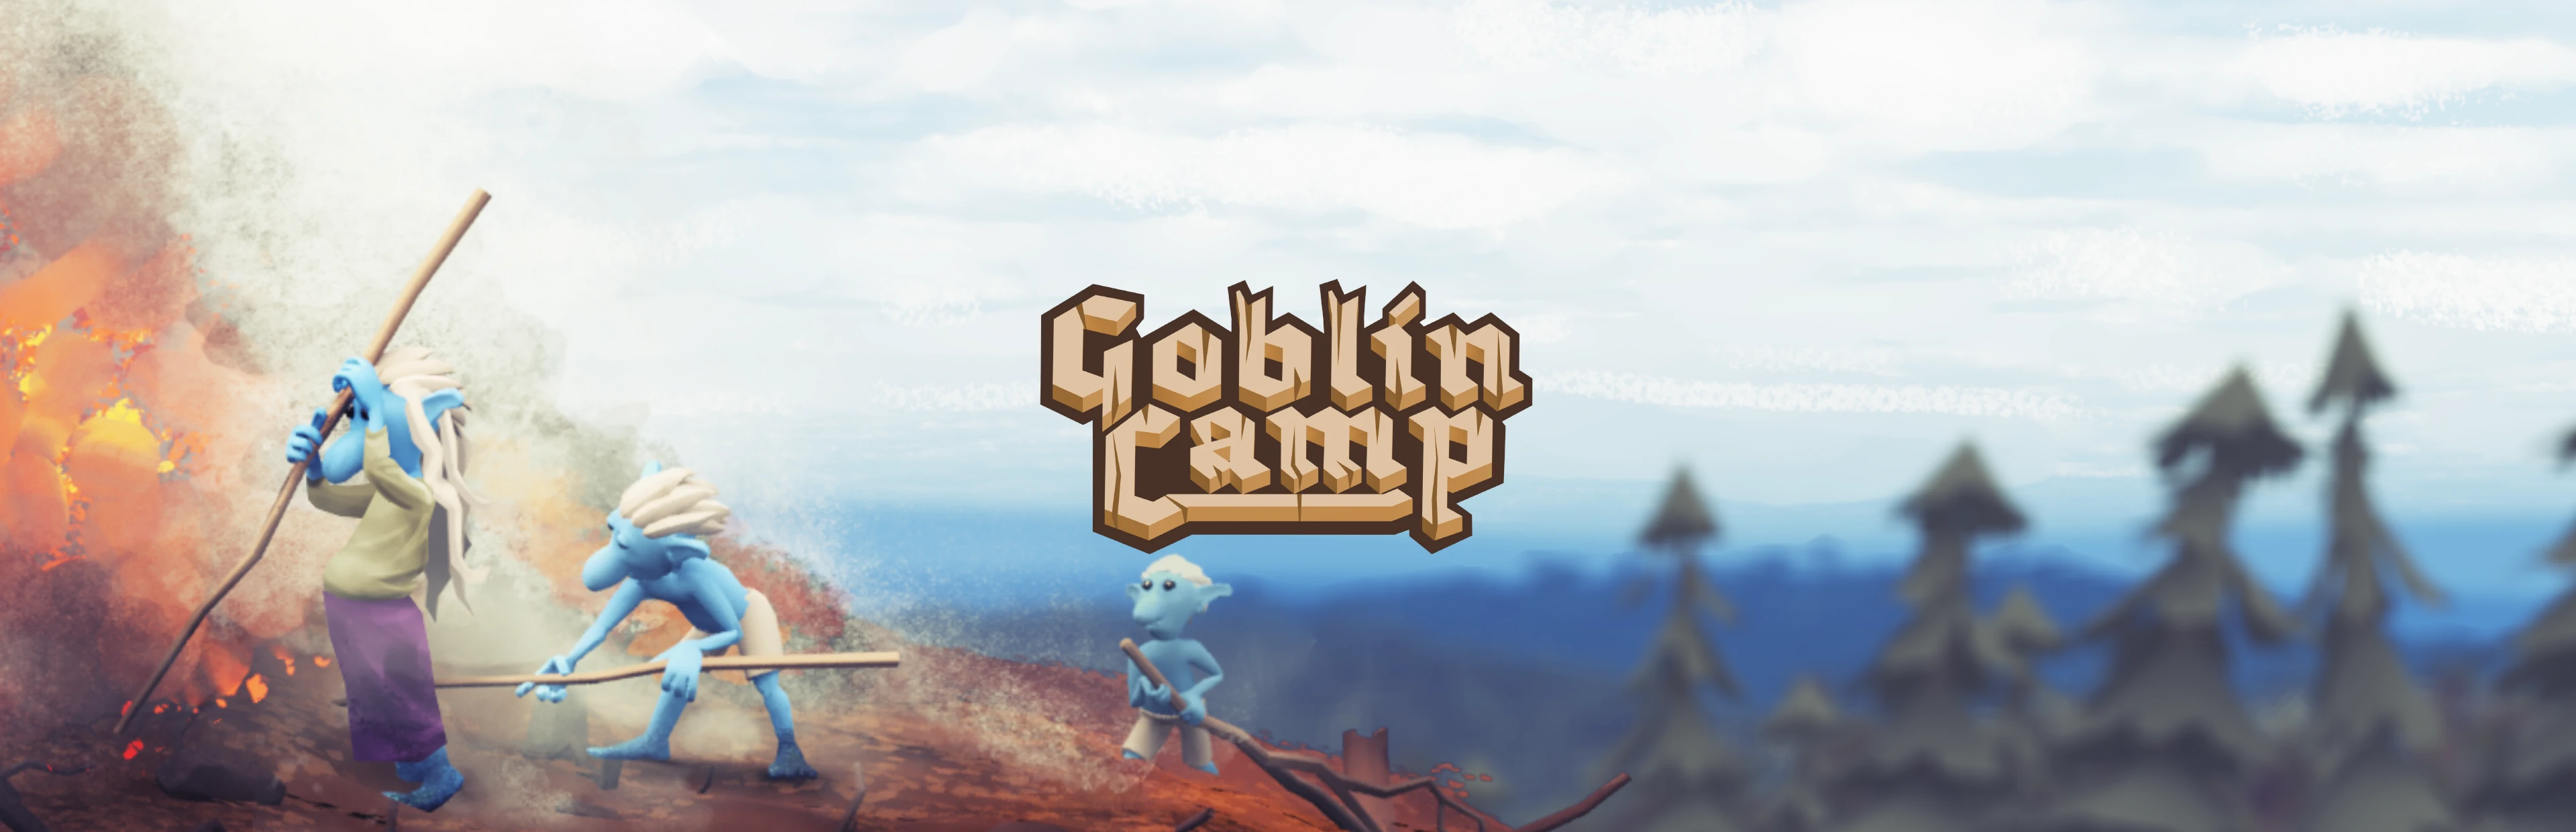 (c) Goblincamp.com